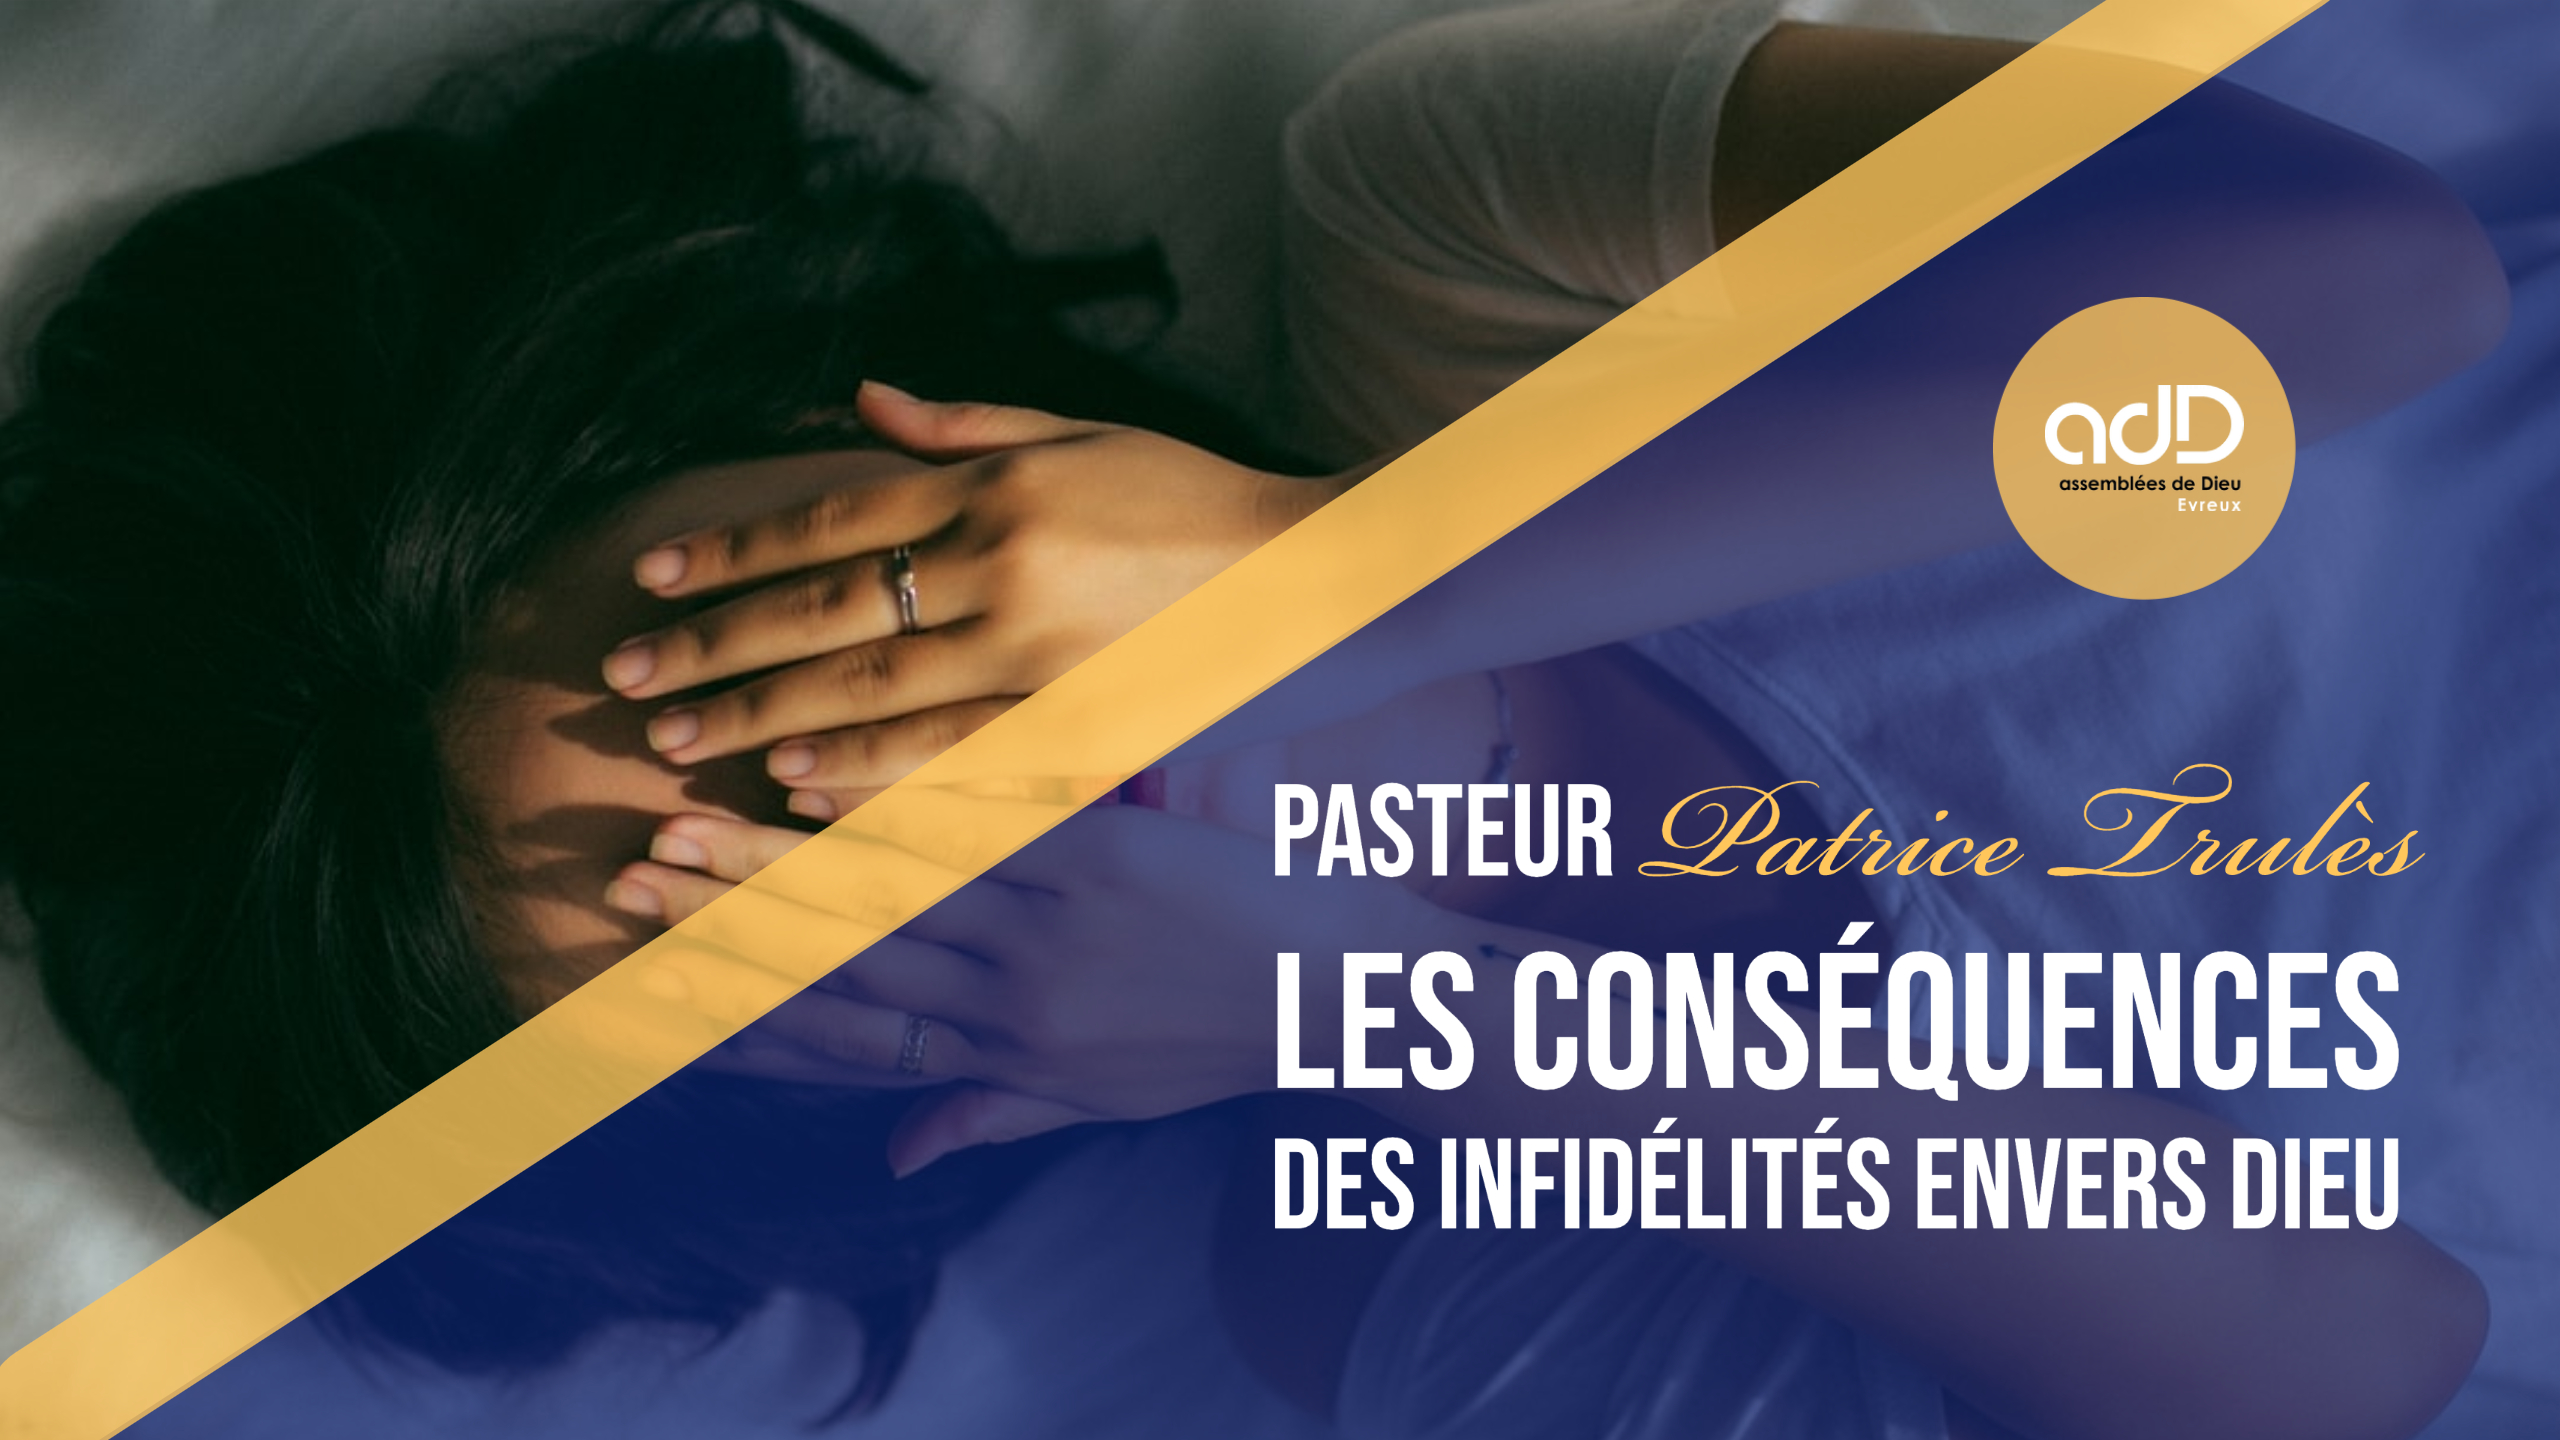 Featured image for “Culte en direct à 9h00| « Les conséquences des infidélités envers Dieu » | Pasteur Patrice Trulès”